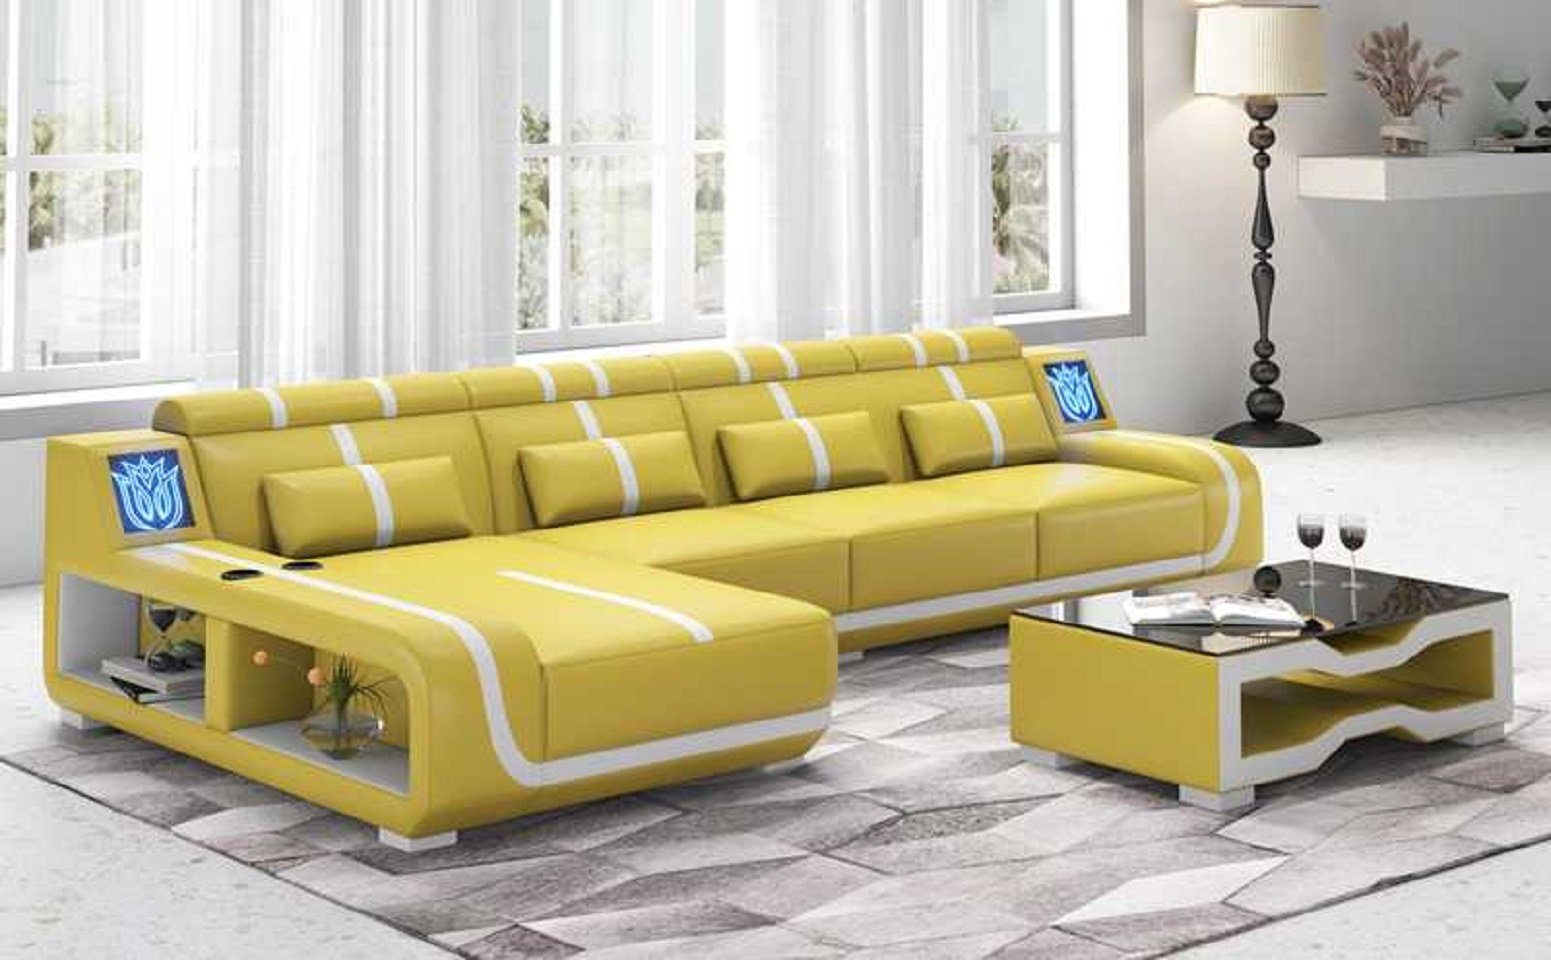 JVmoebel Ecksofa Design Ecksofa Couch L Form Liege Modern Sofa couchen, 3 Teile, Made in Europe Gelb | Ecksofas